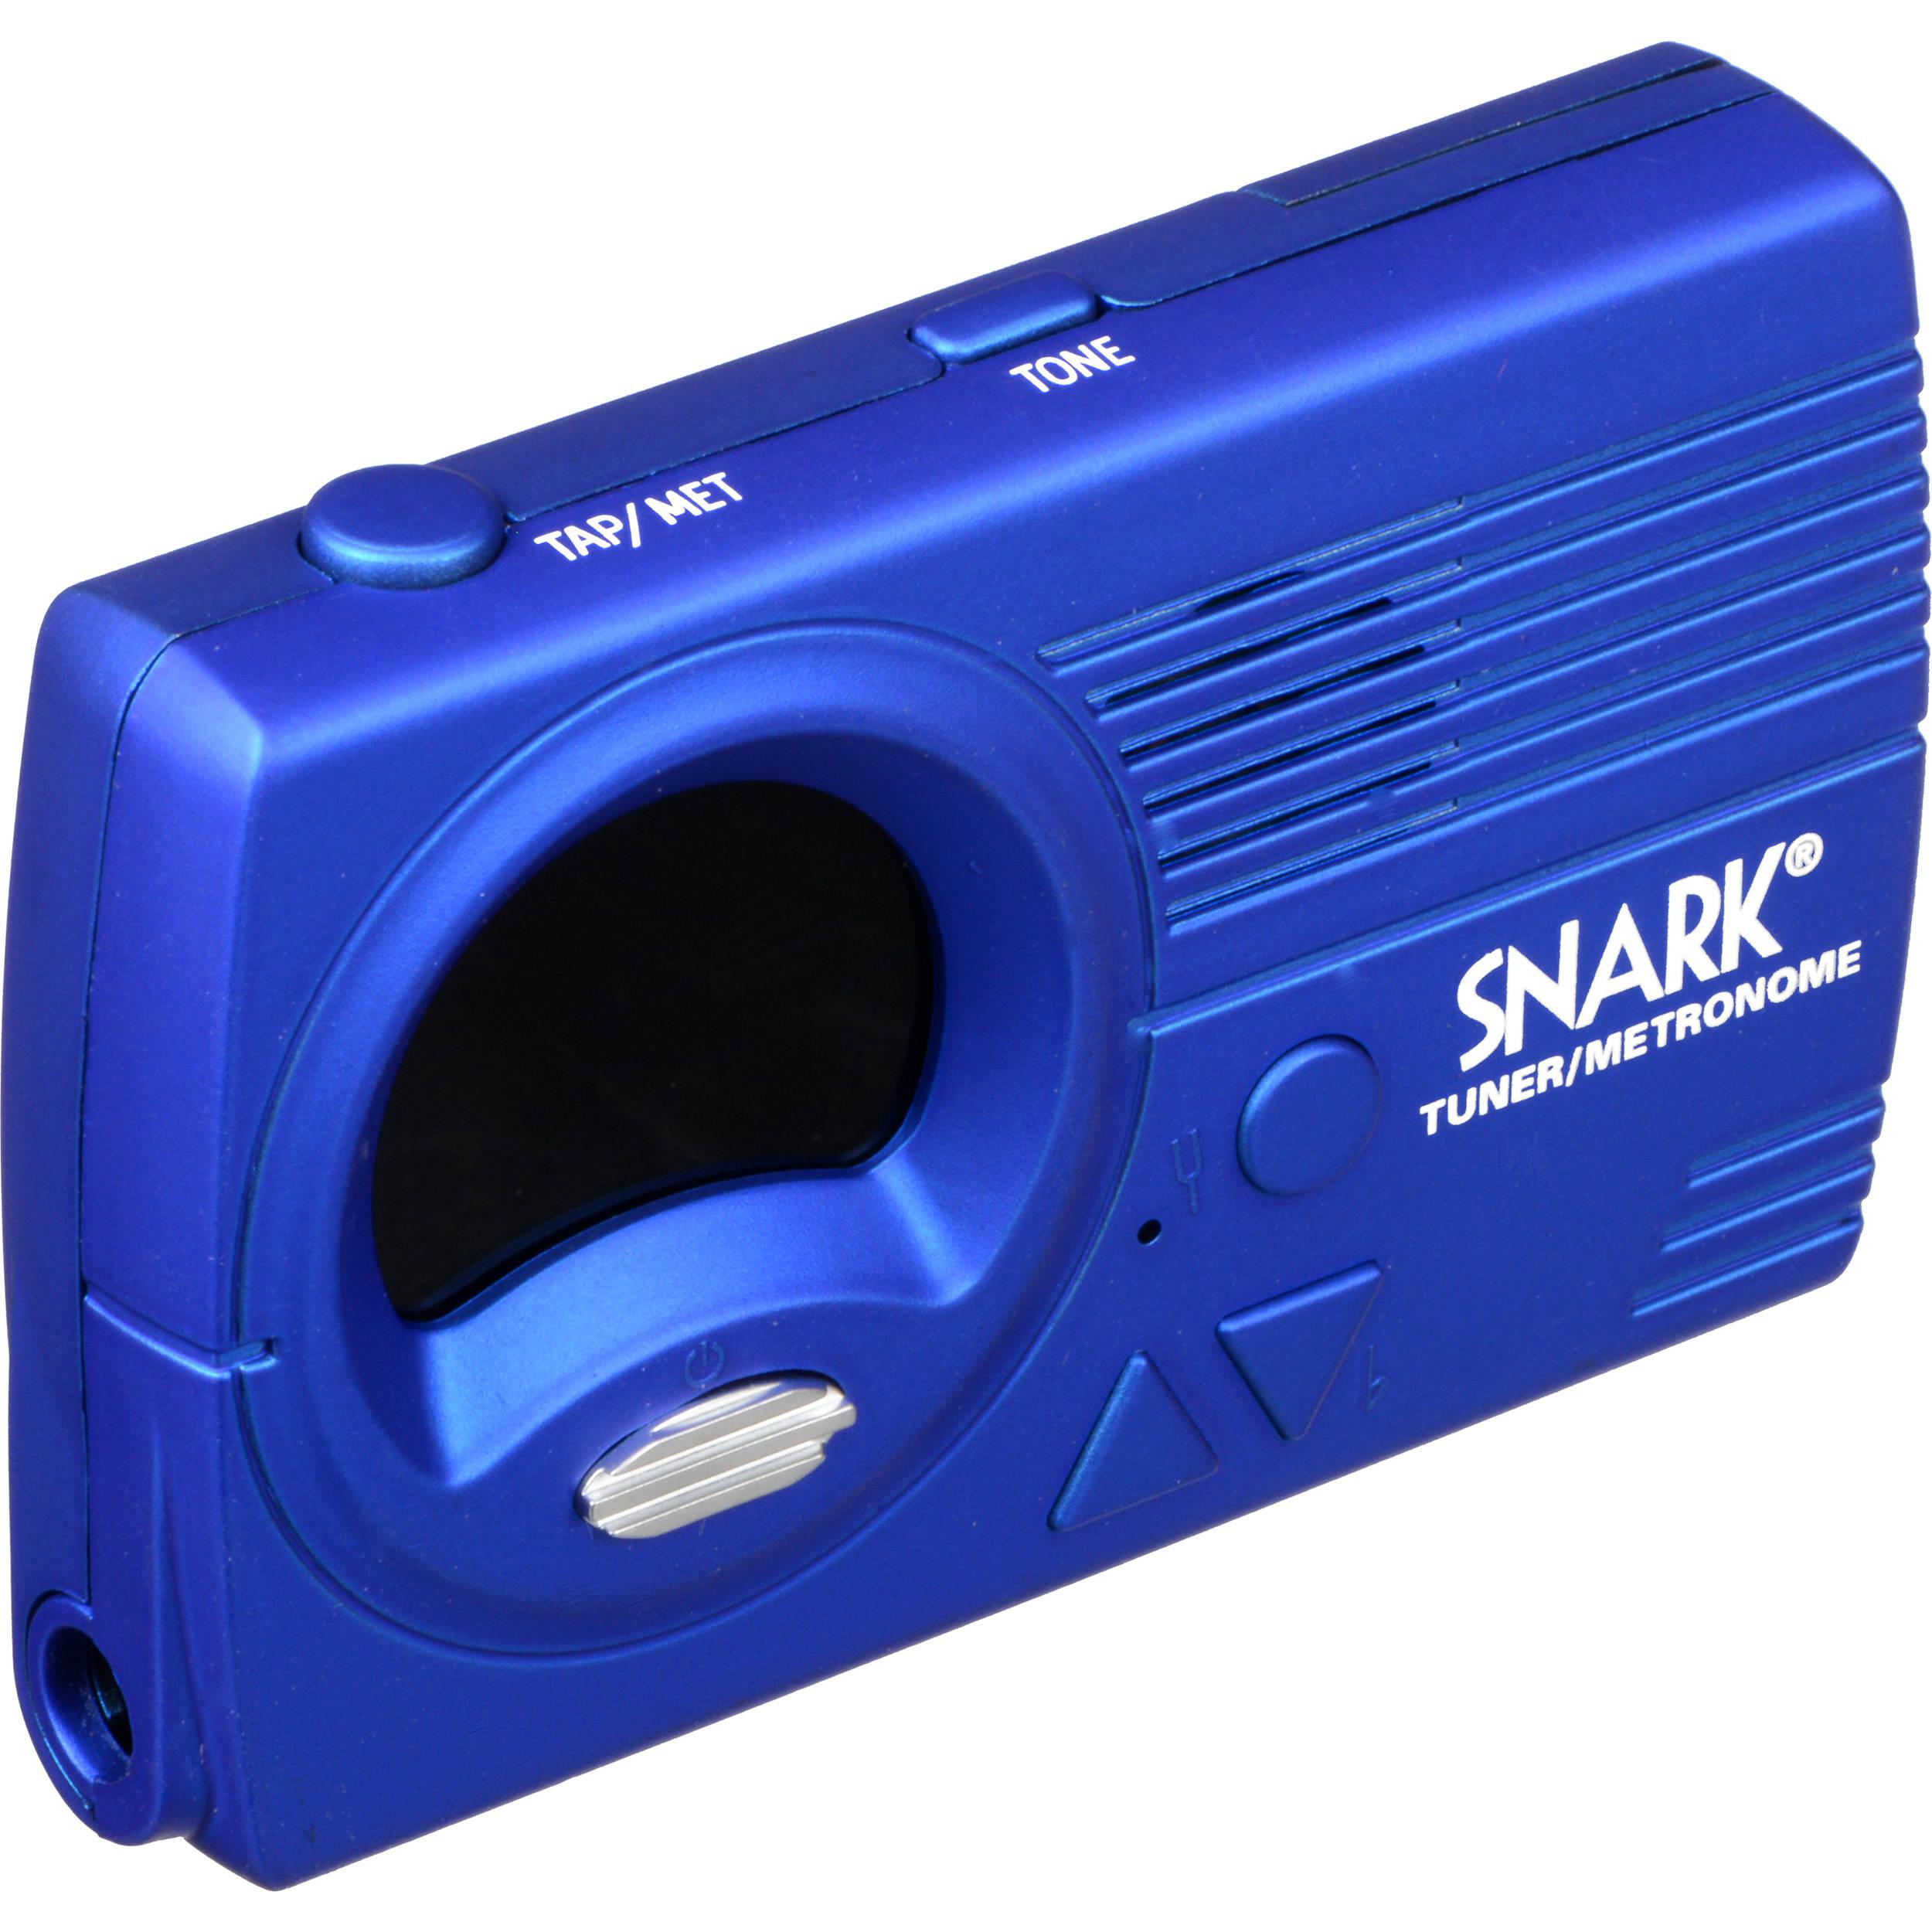 Snark - Afinador/Metronomo para Guitarra/Bajo, Color Azul Mod.SN3_15